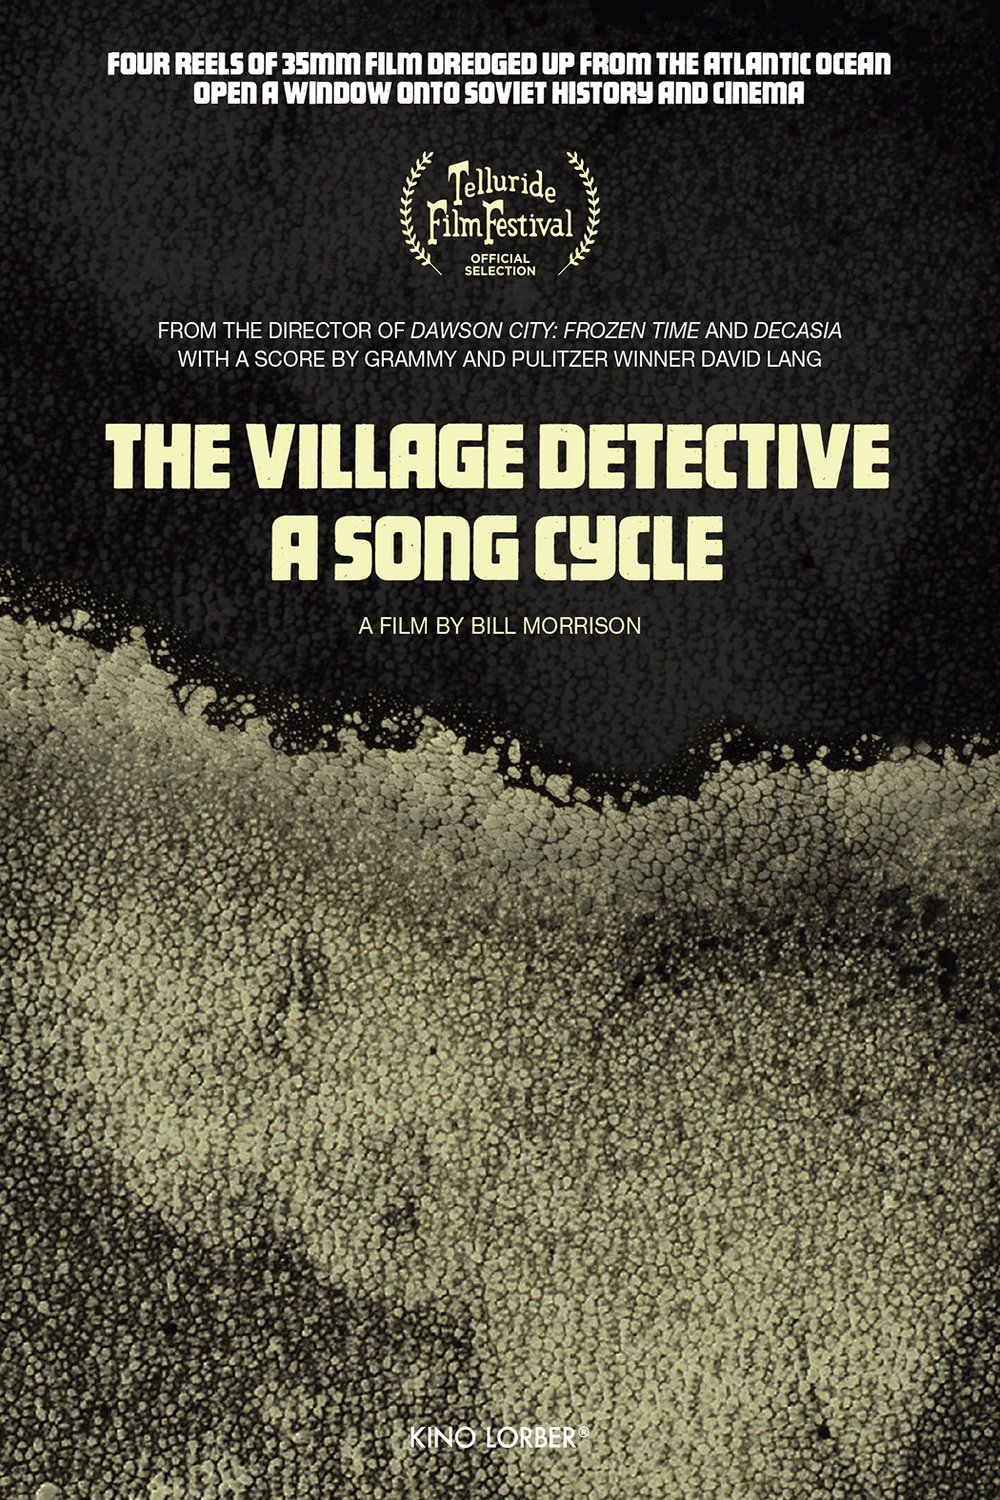 L'affiche du film The Village Detective: A song cycle